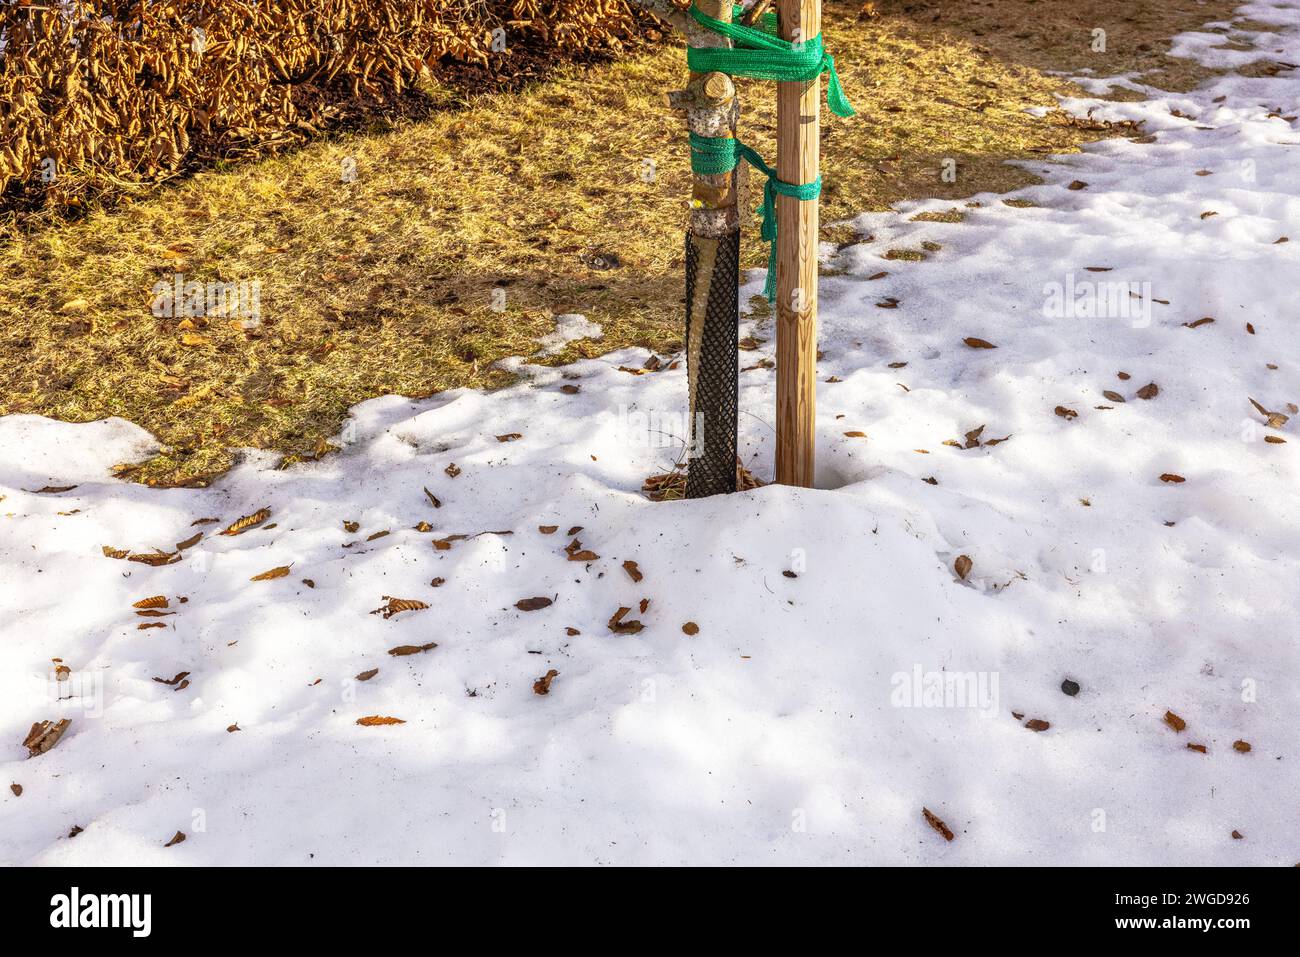 Nahaufnahme des Apfelbaums, geschützt durch ein spezielles Netz vor Tieren vor dem Hintergrund des schmelzenden Schnees im Garten während der Nebensaison. Schweden. Stockfoto